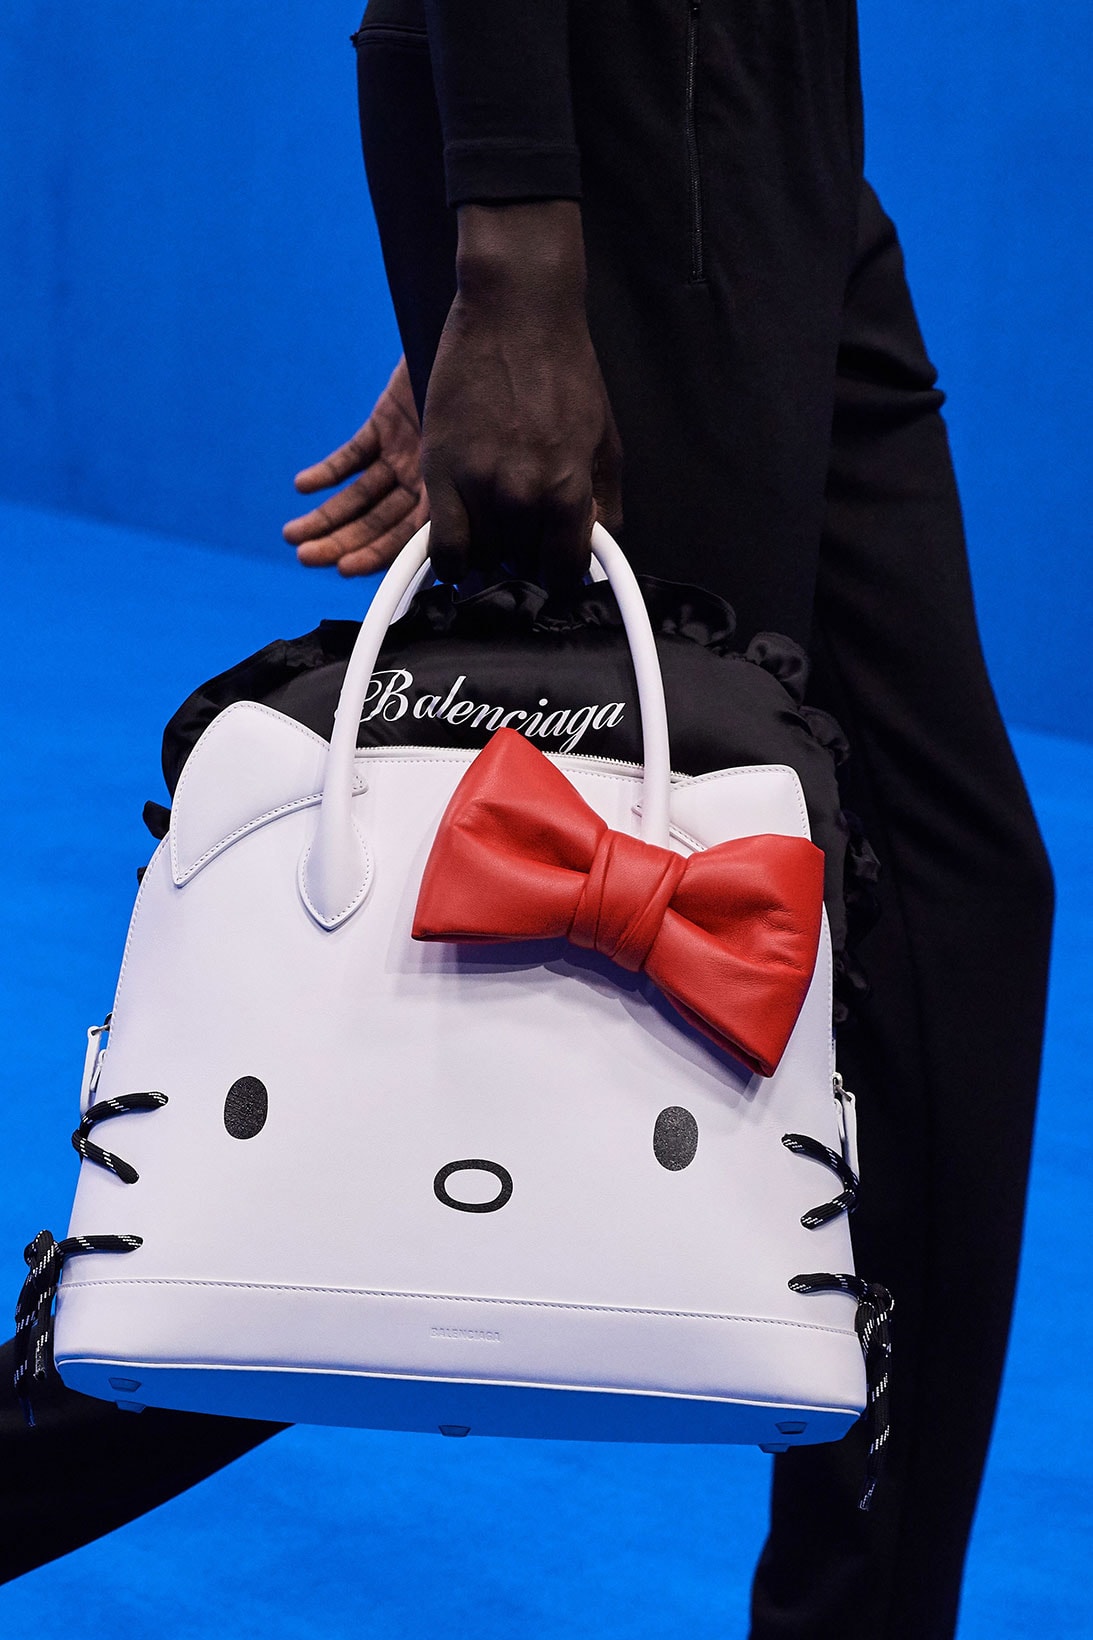 balenciaga hello kitty bags kim kardashian skims lingerie bodysuits